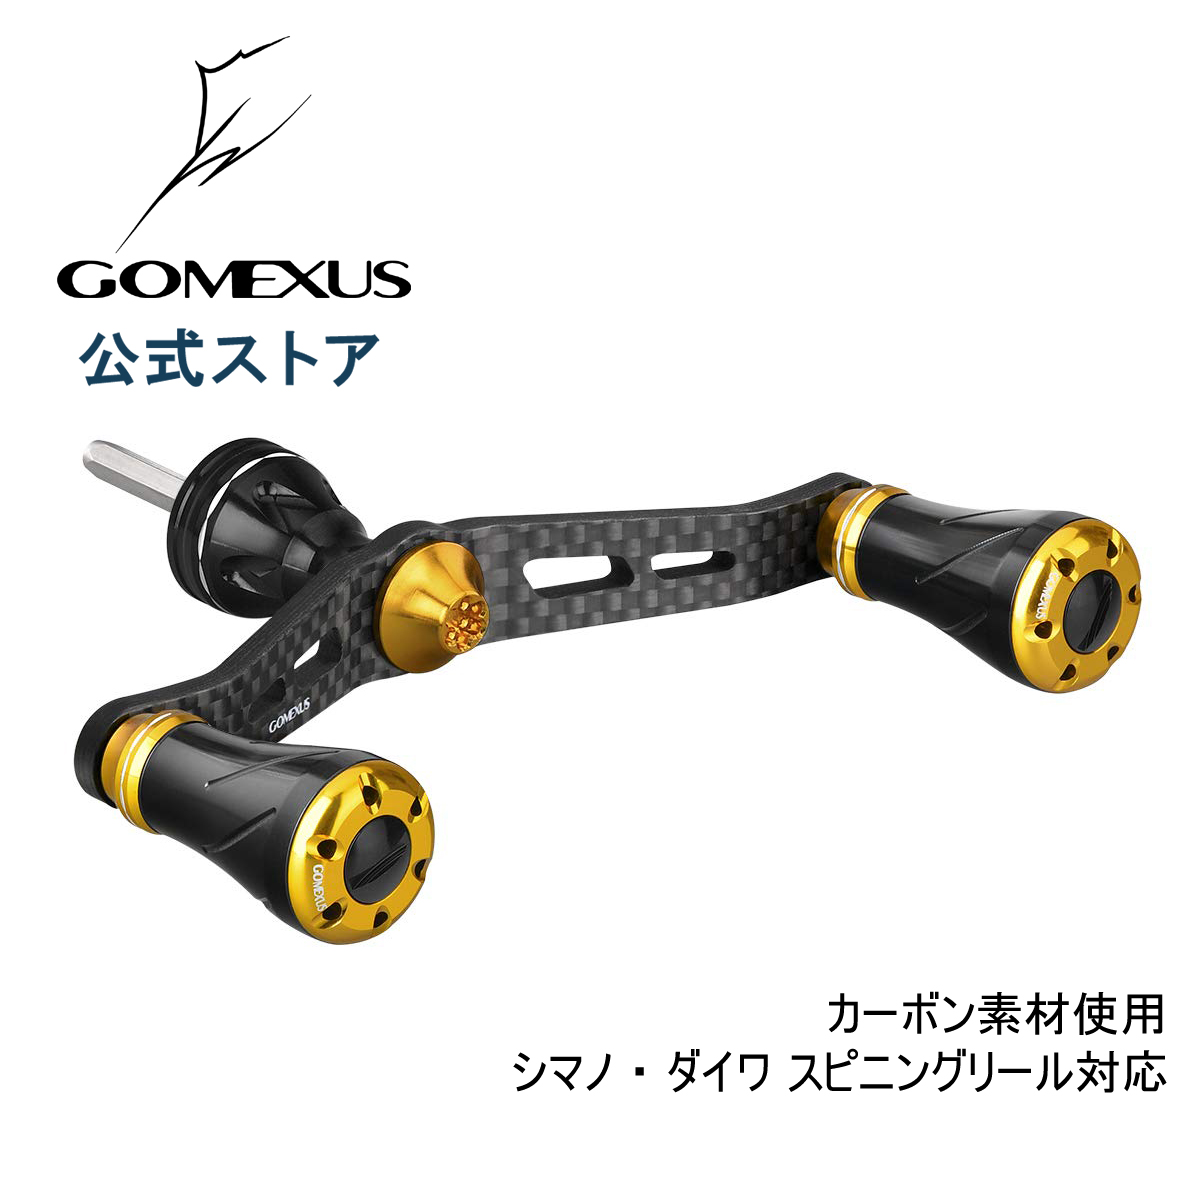 楽天市場 送料無料 ゴメクサス ダブル ハンドル 98mm 72mm リール カスタム パーツ シマノ Shimano ダイワ Daiwa 供回り式 スピニングリール 専用 カーボン製 Gomexus ゴメクサス Gomexus